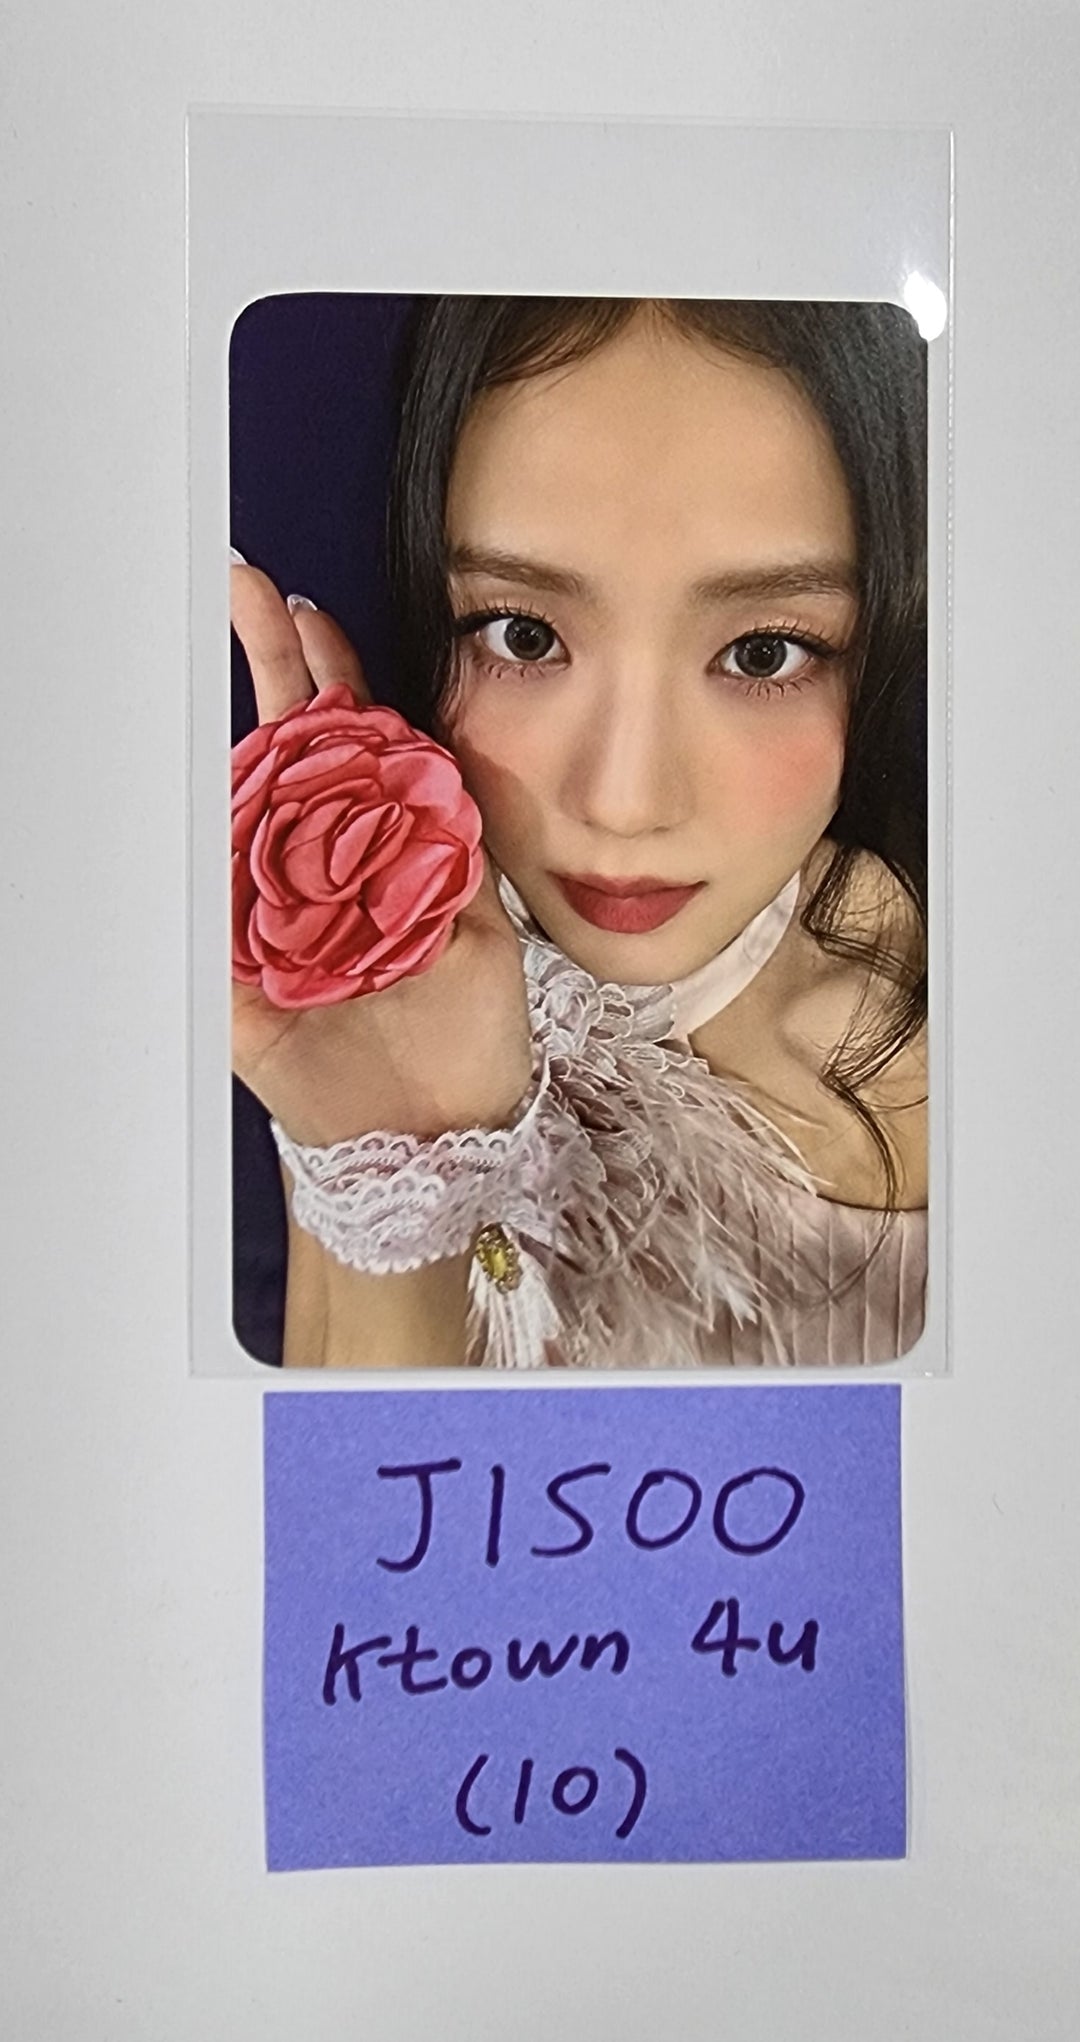 JISOO (Of Black Pink) "ME" - Ktown4U 予約特典フォトカード